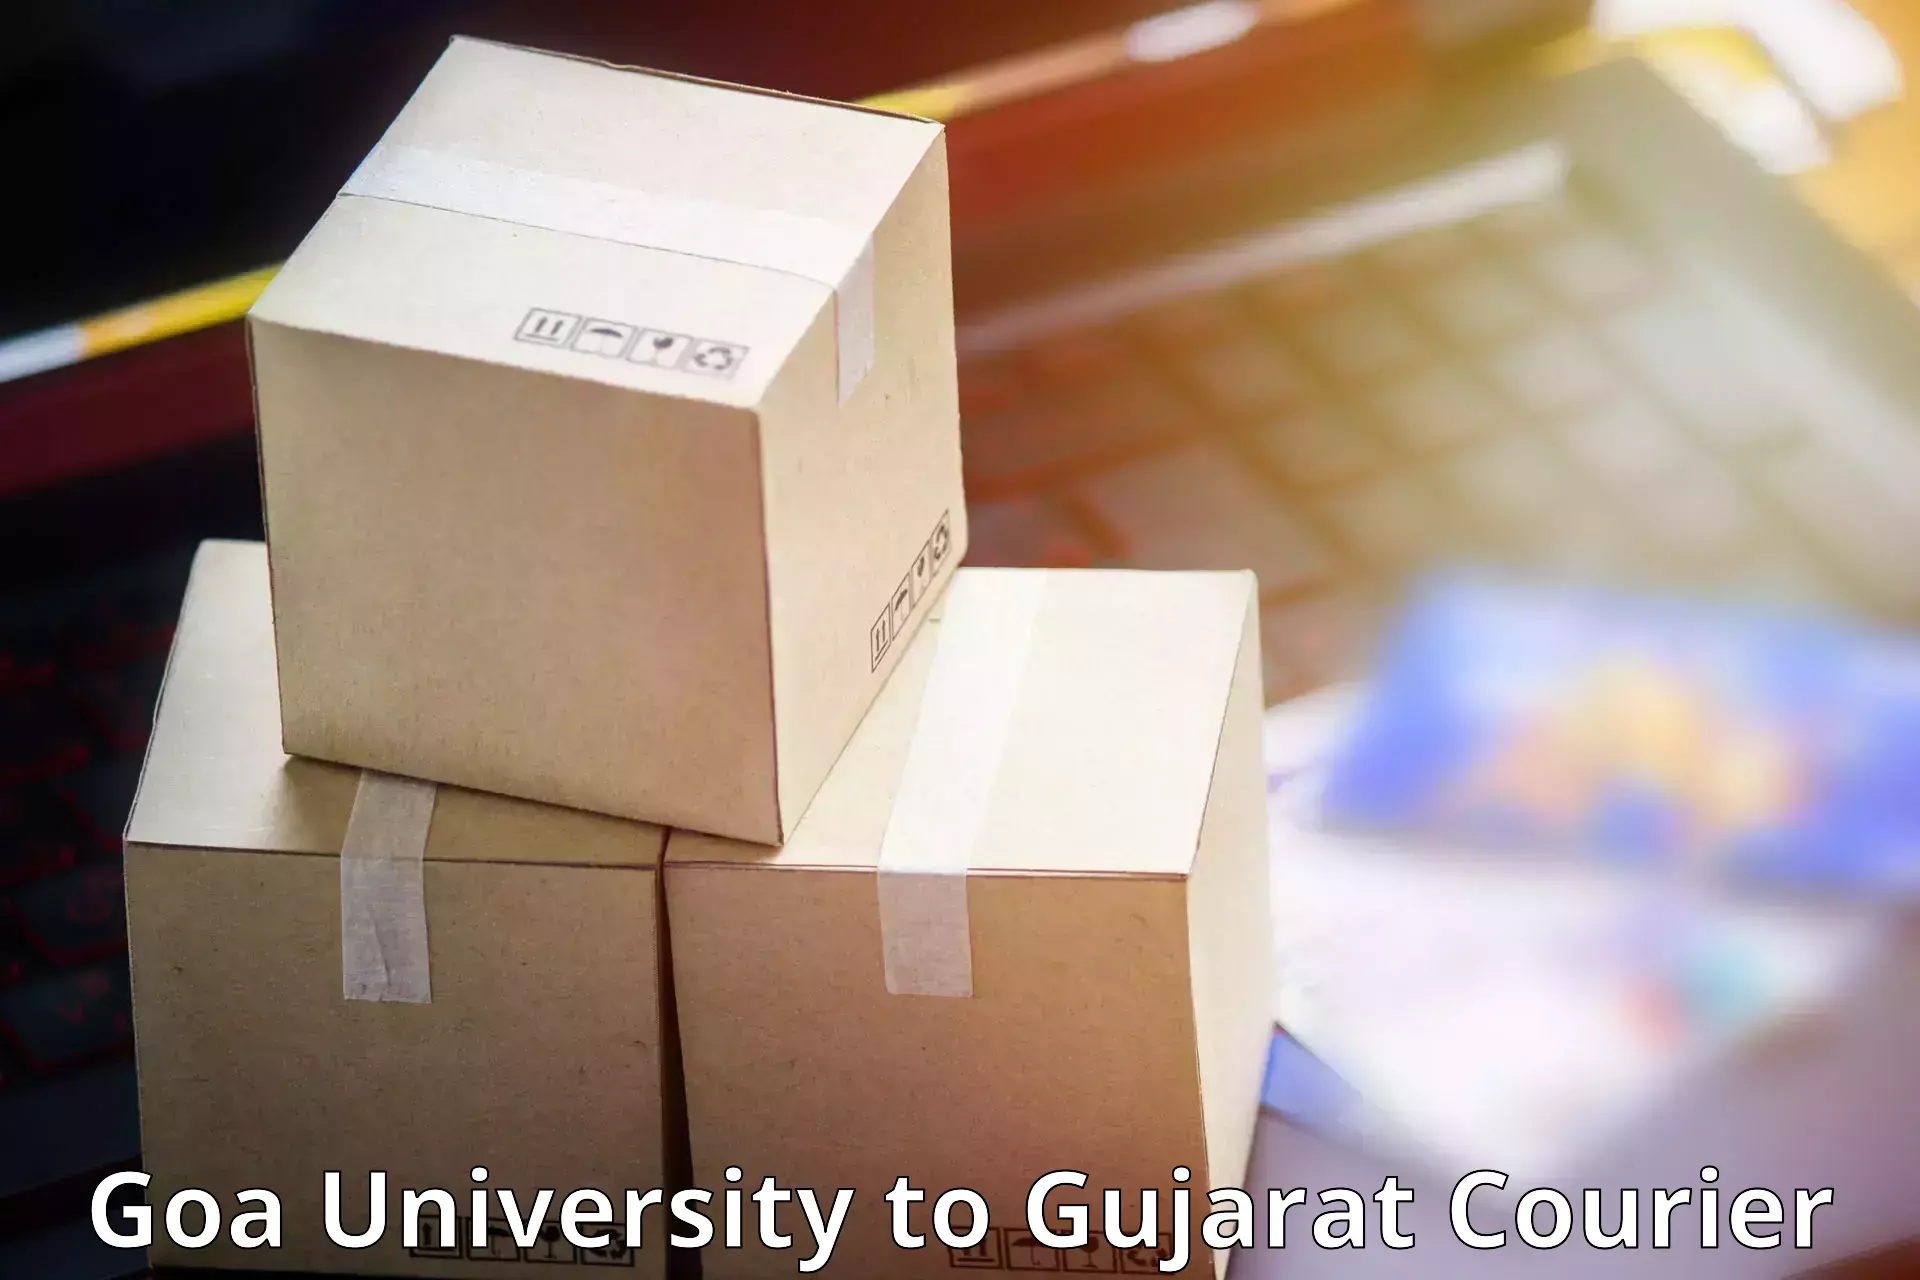 Automated parcel services Goa University to Dayapar